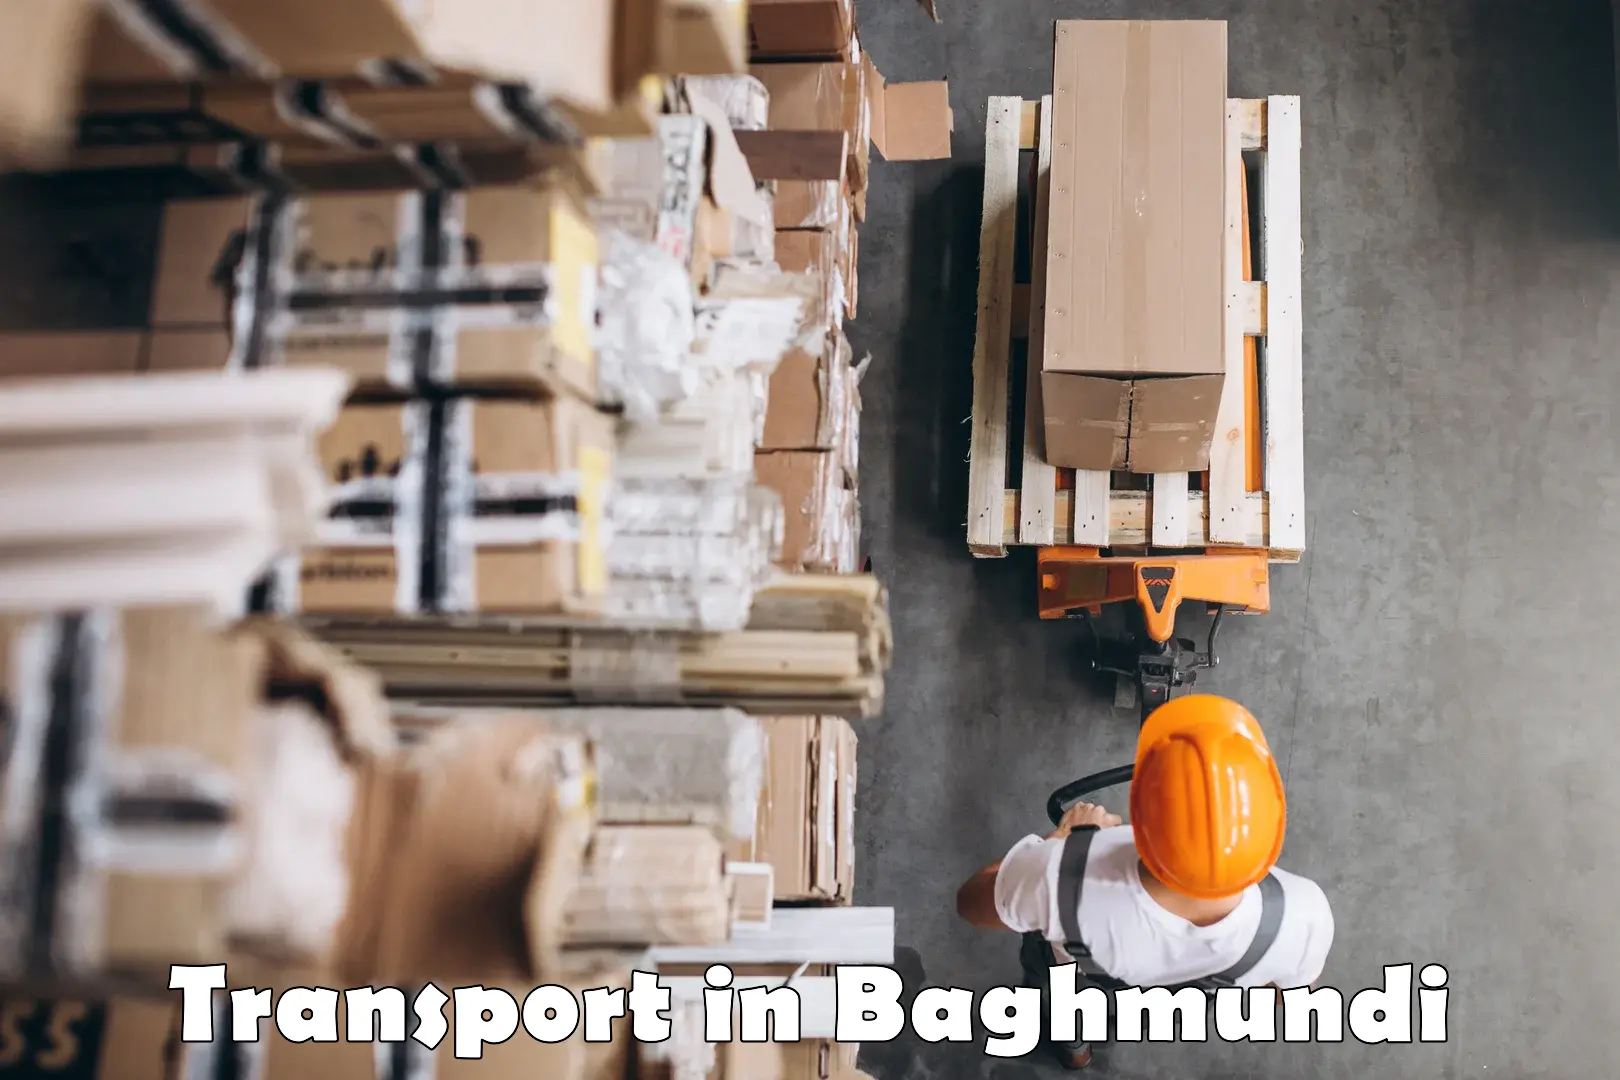 Commercial transport service in Baghmundi